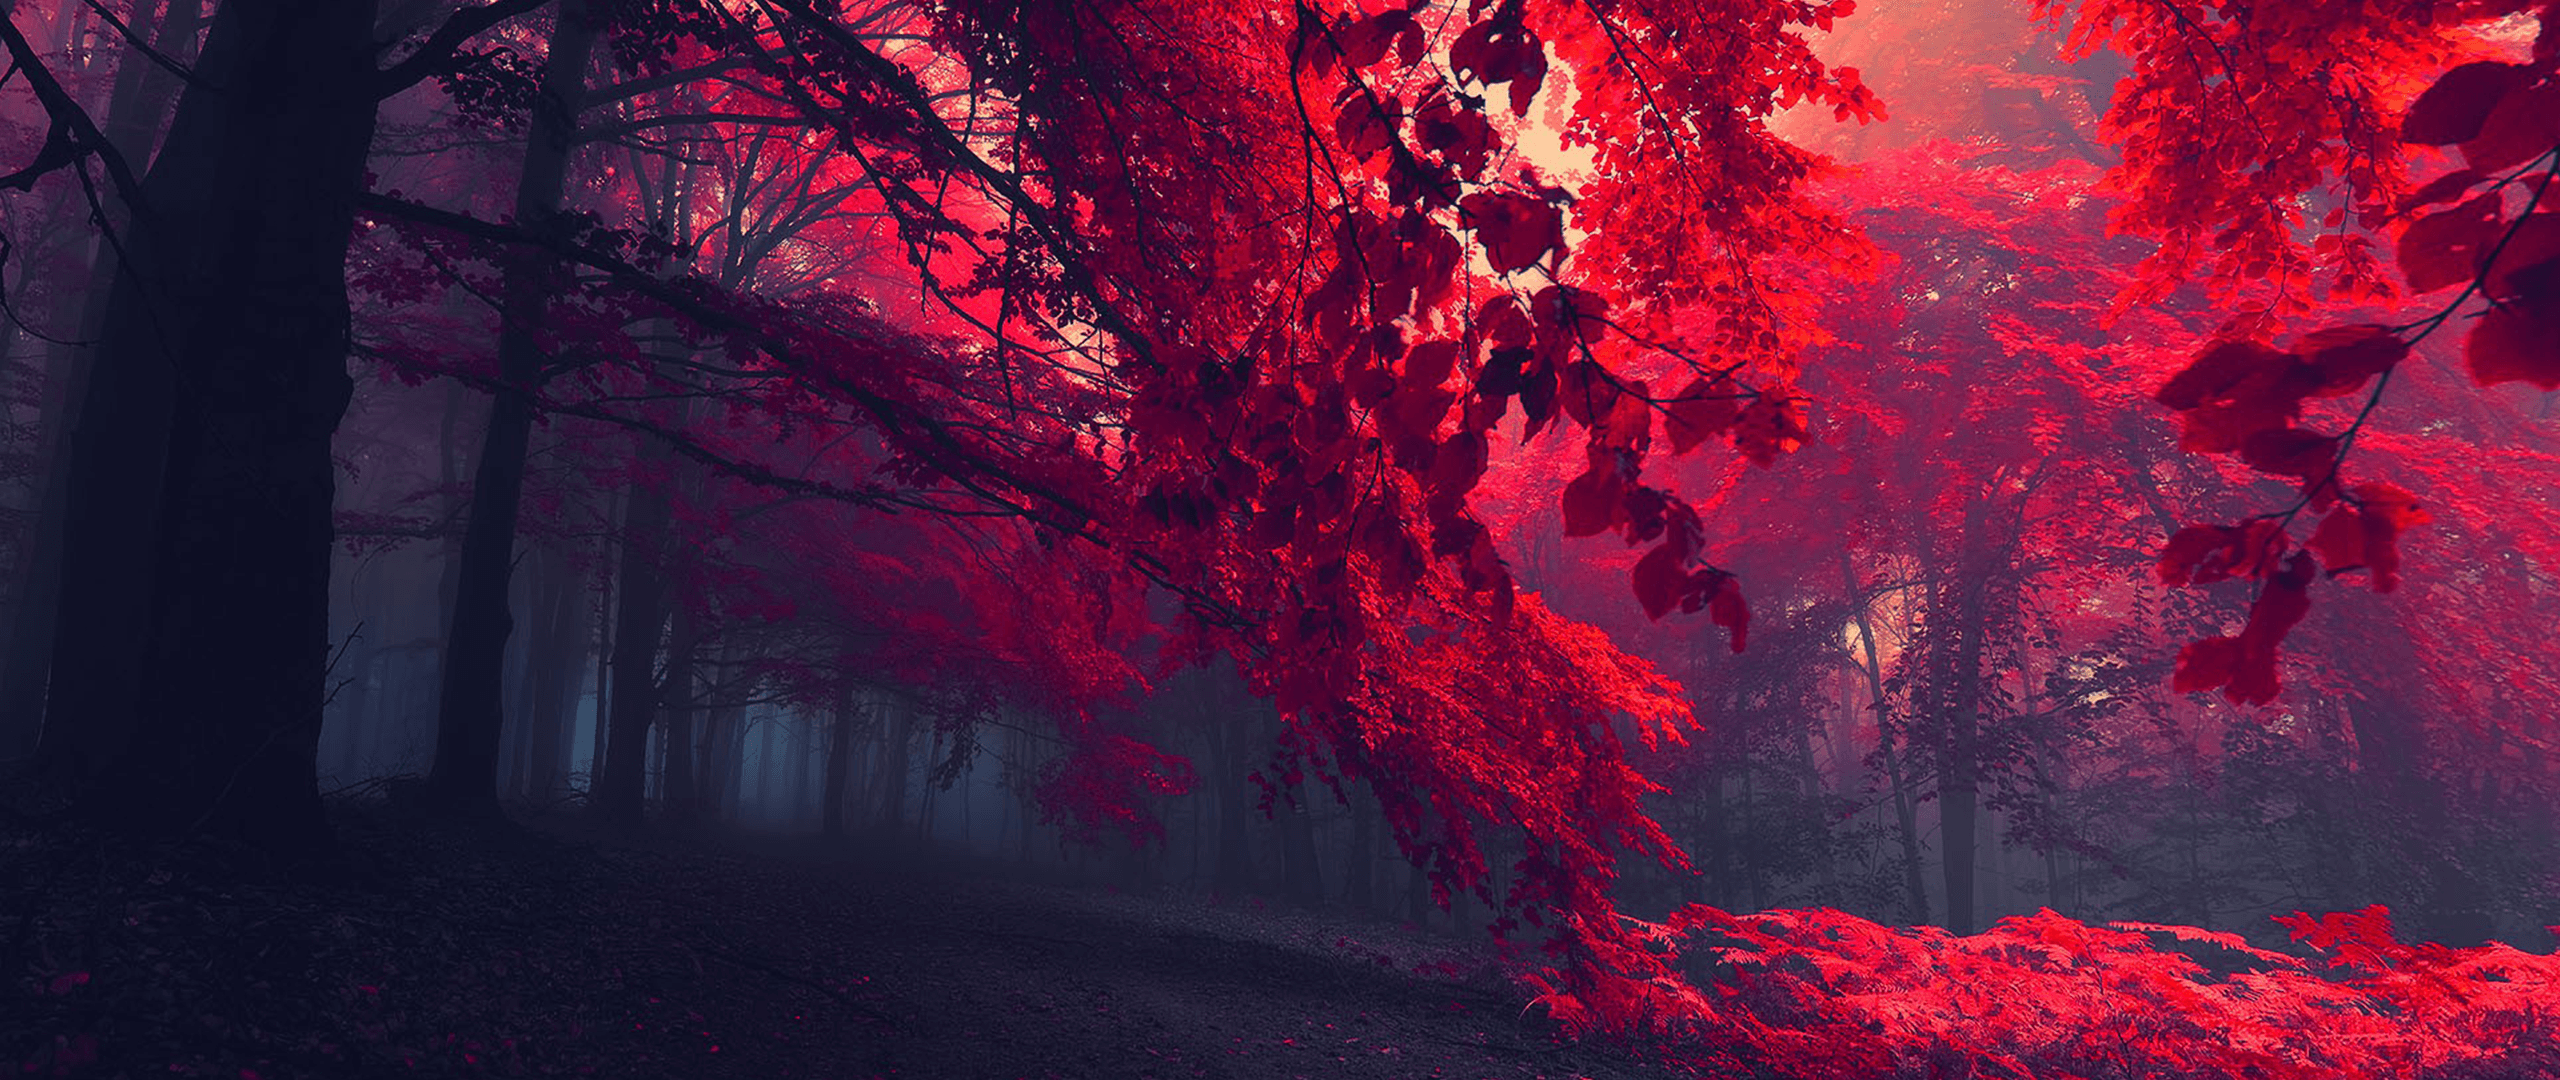 Wallpaper, sunlight, forest, nature, red, photography, texture, ultra wide, autumn, darkness, screenshot, computer wallpaper 2560x1080